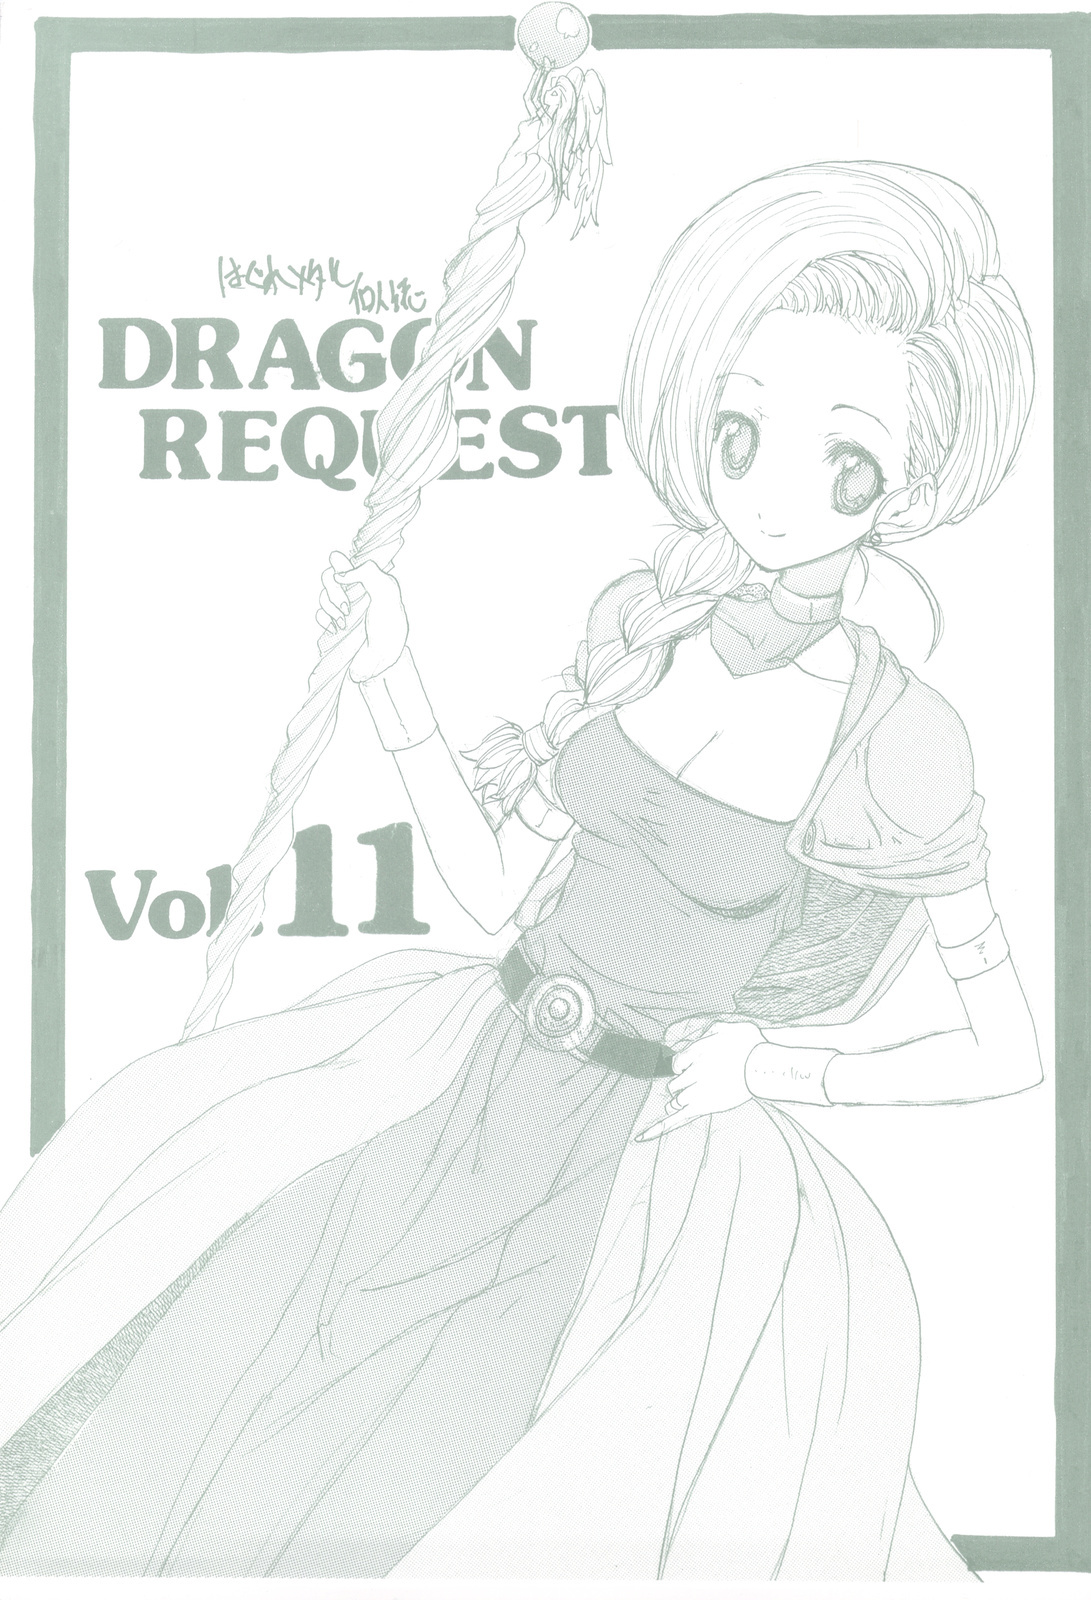 (SC41) [ZINZIN (Hagure Metal)] DRAGON REQUEST Vol. 11 (Dragon Quest V) page 1 full